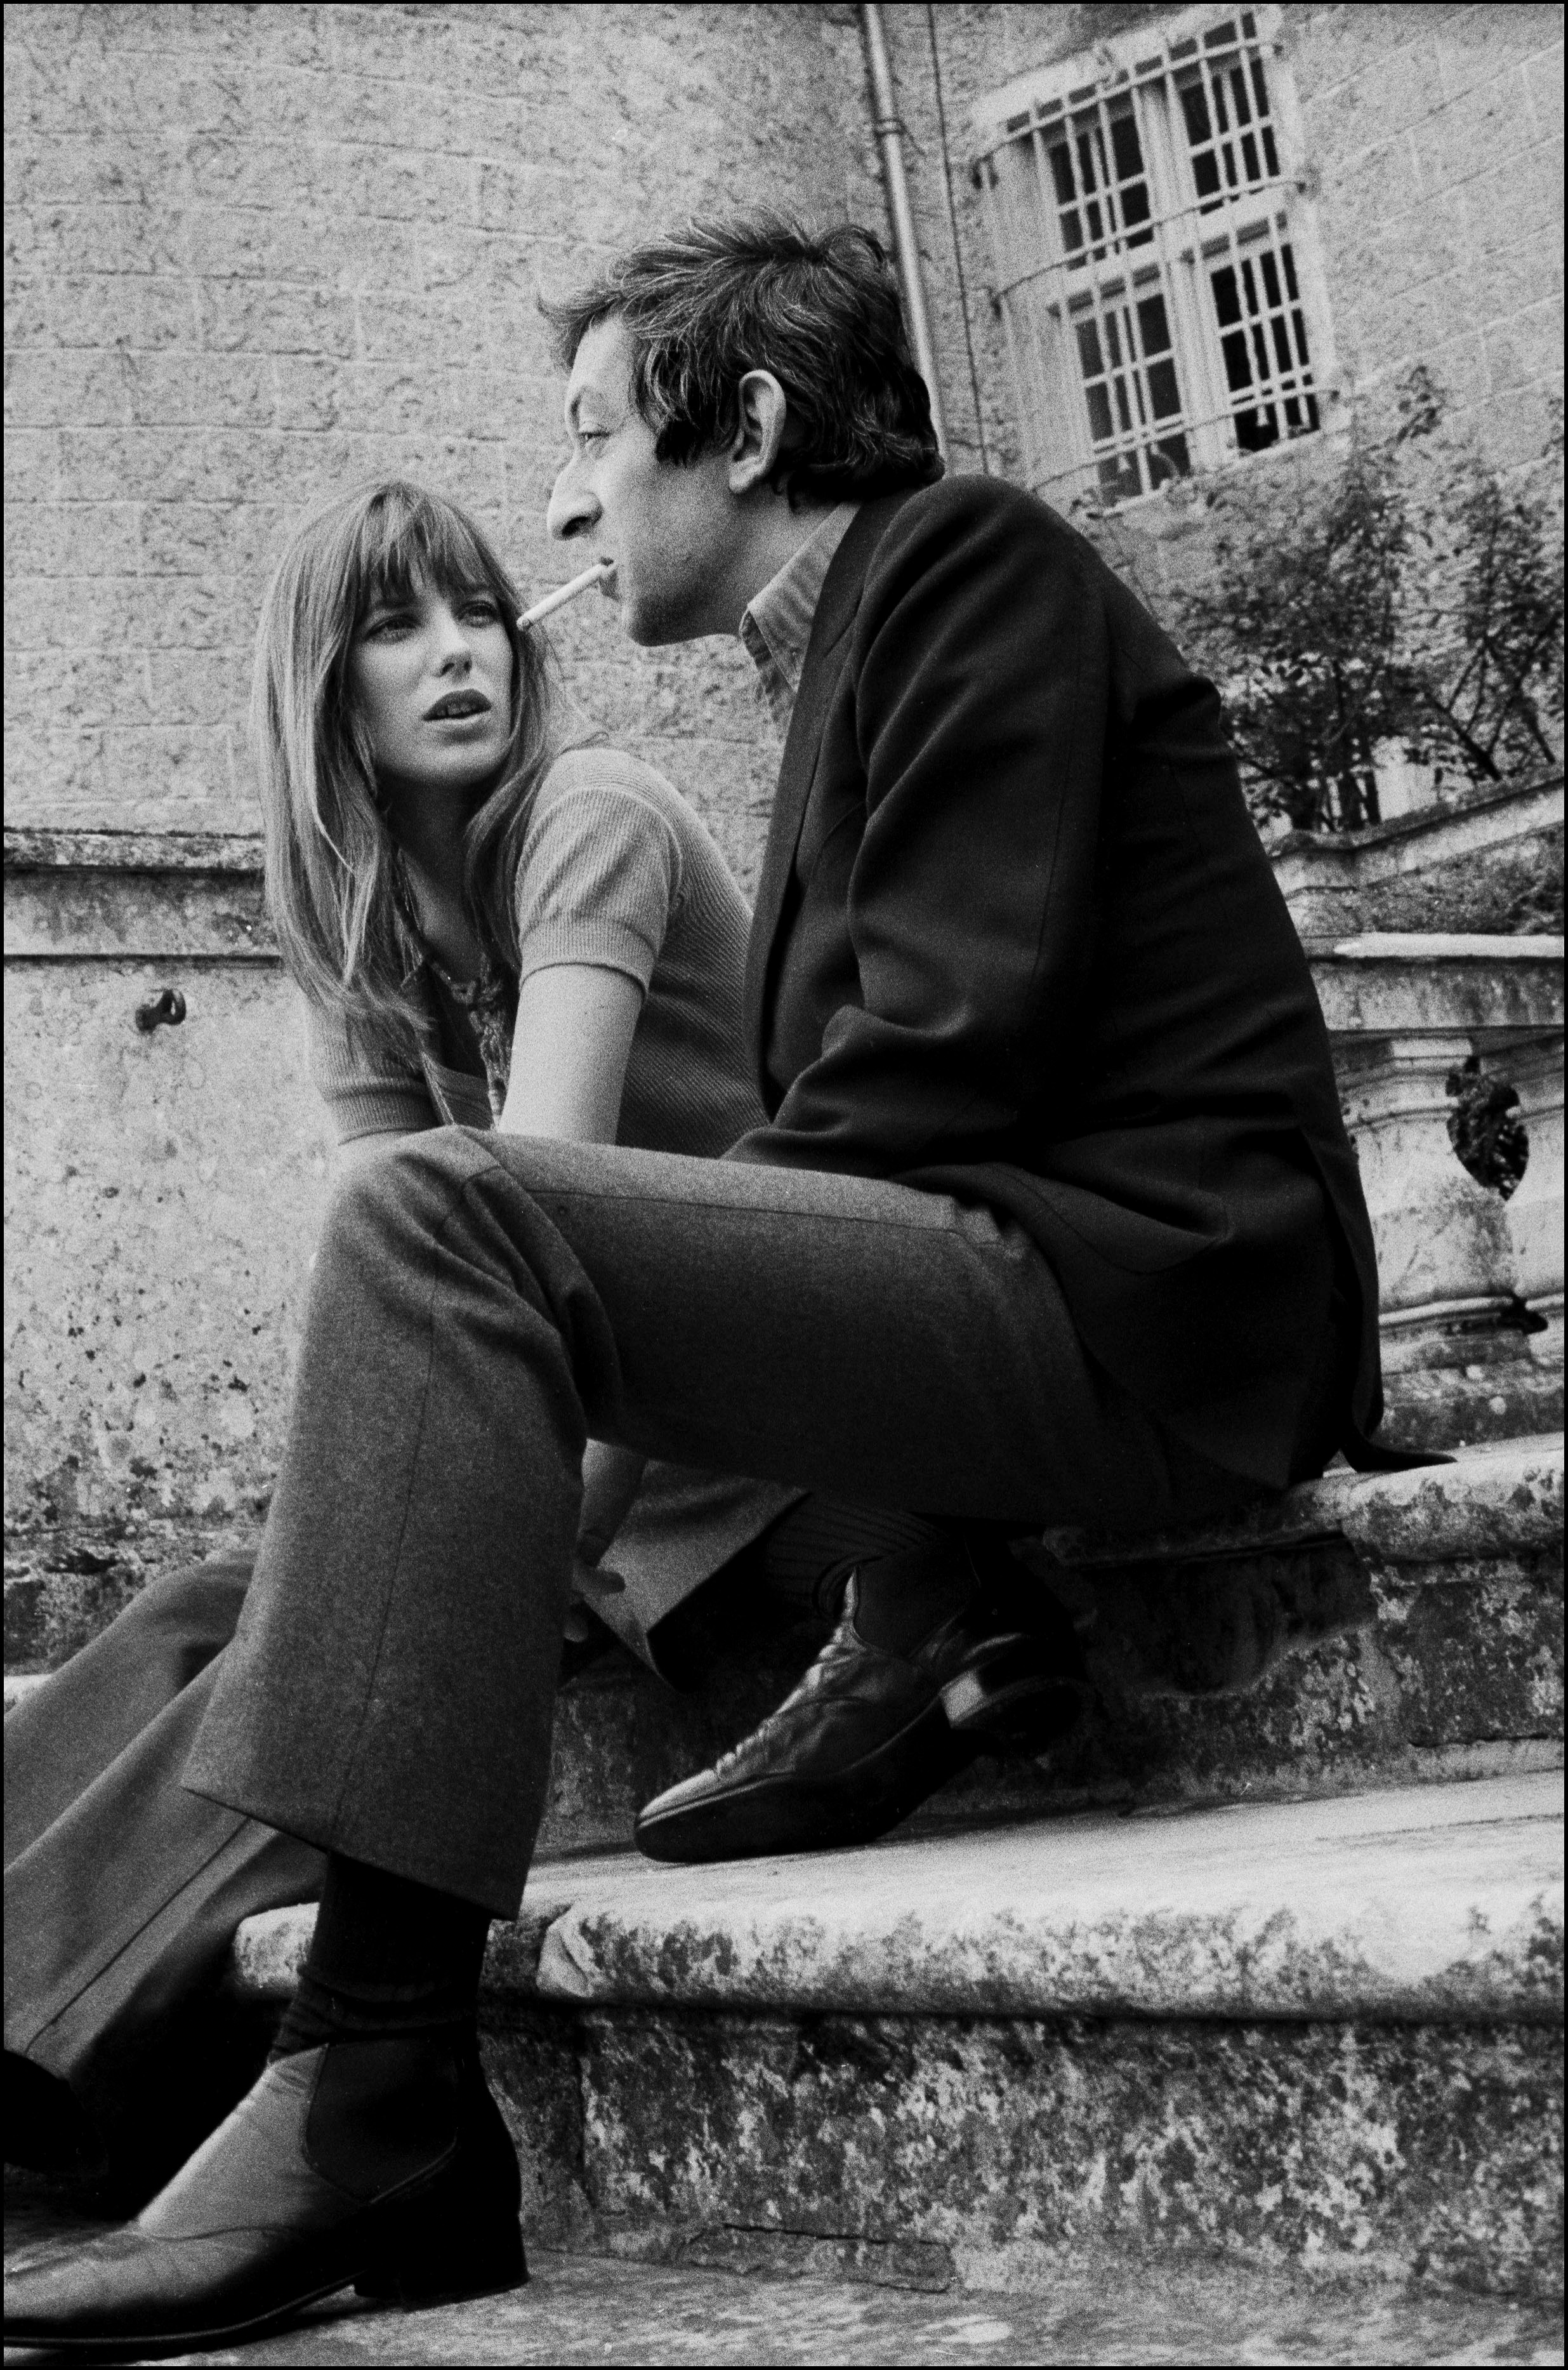 Nach einer früh gescheiterten Ehe verliebte sie sich in das französische Enfant terrible Serge Gainsbourg. Foto: REPORTERS ASSOCIES/Gamma-Rapho/Getty Images